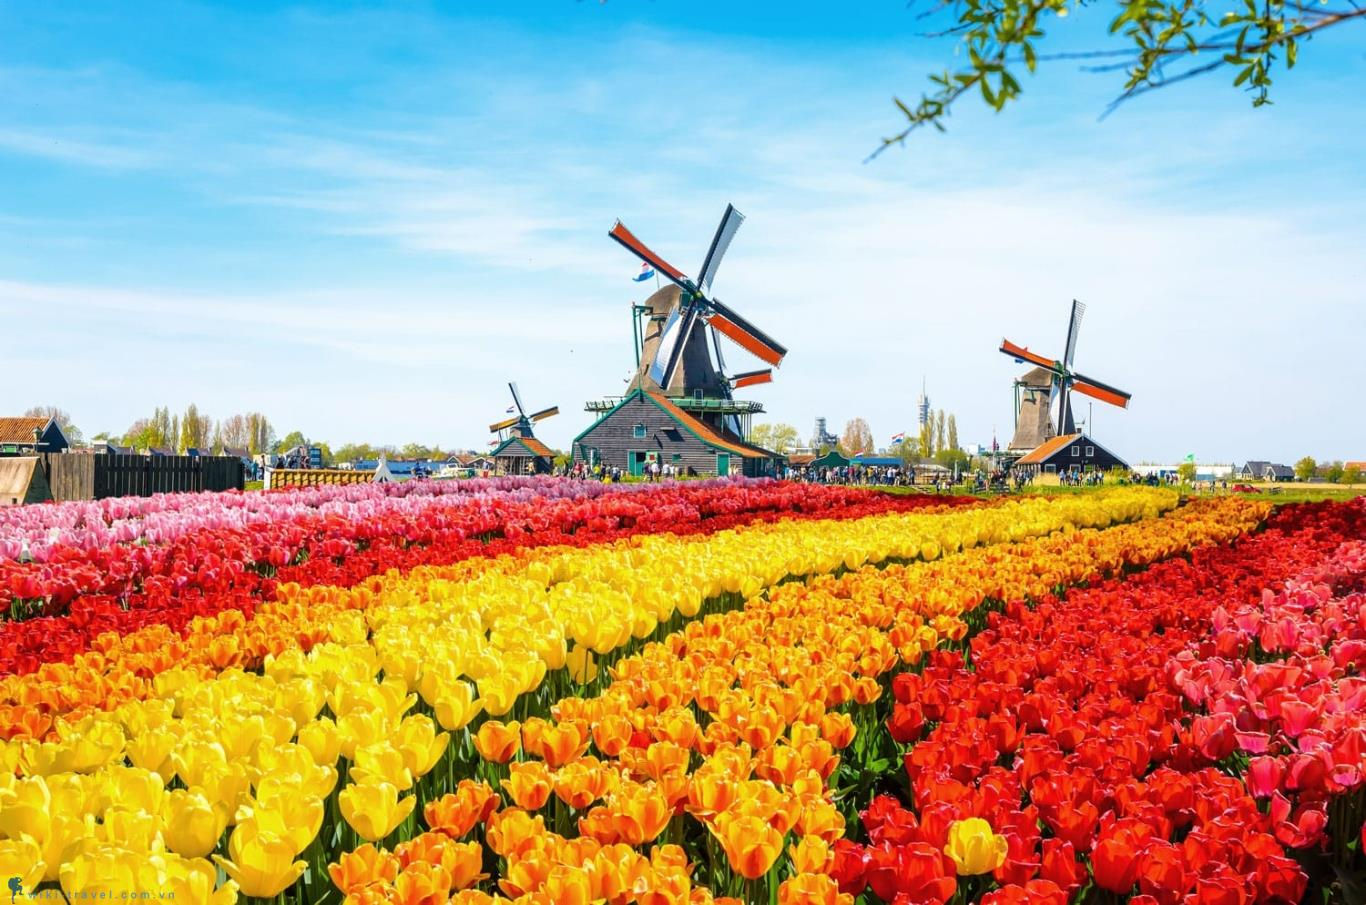 Nếu như nhắc đến đất nước với những bông hoa tulip đầy màu sắc hay cối xoay gió sừng sững thì người ta liên tưởng ngay đến Hà Lan. Đây được cho là quốc gia đáng sống nhất ở Châu Âu. Với đường bờ biển dài, có rất nhiều cảnh thiên nhiên, làng quê thơ mộng và trù phú…